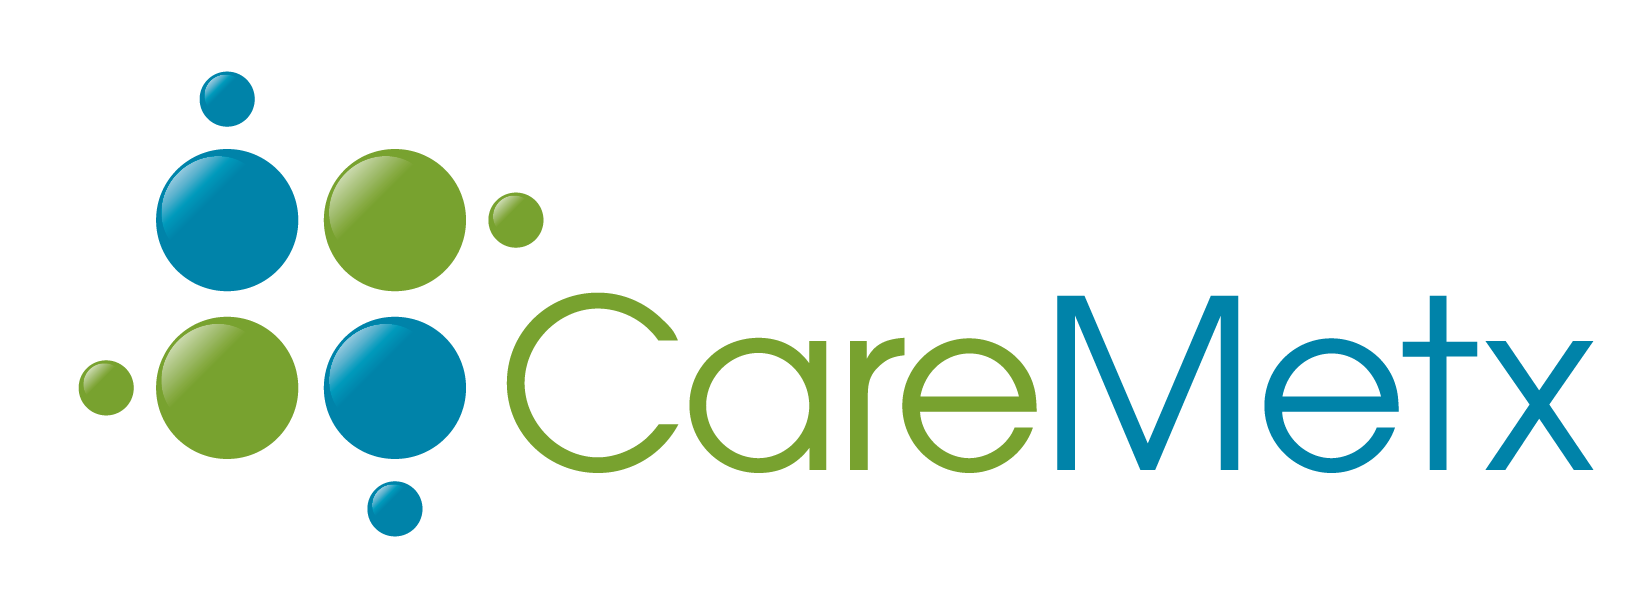 CareMetx Acquires Hu